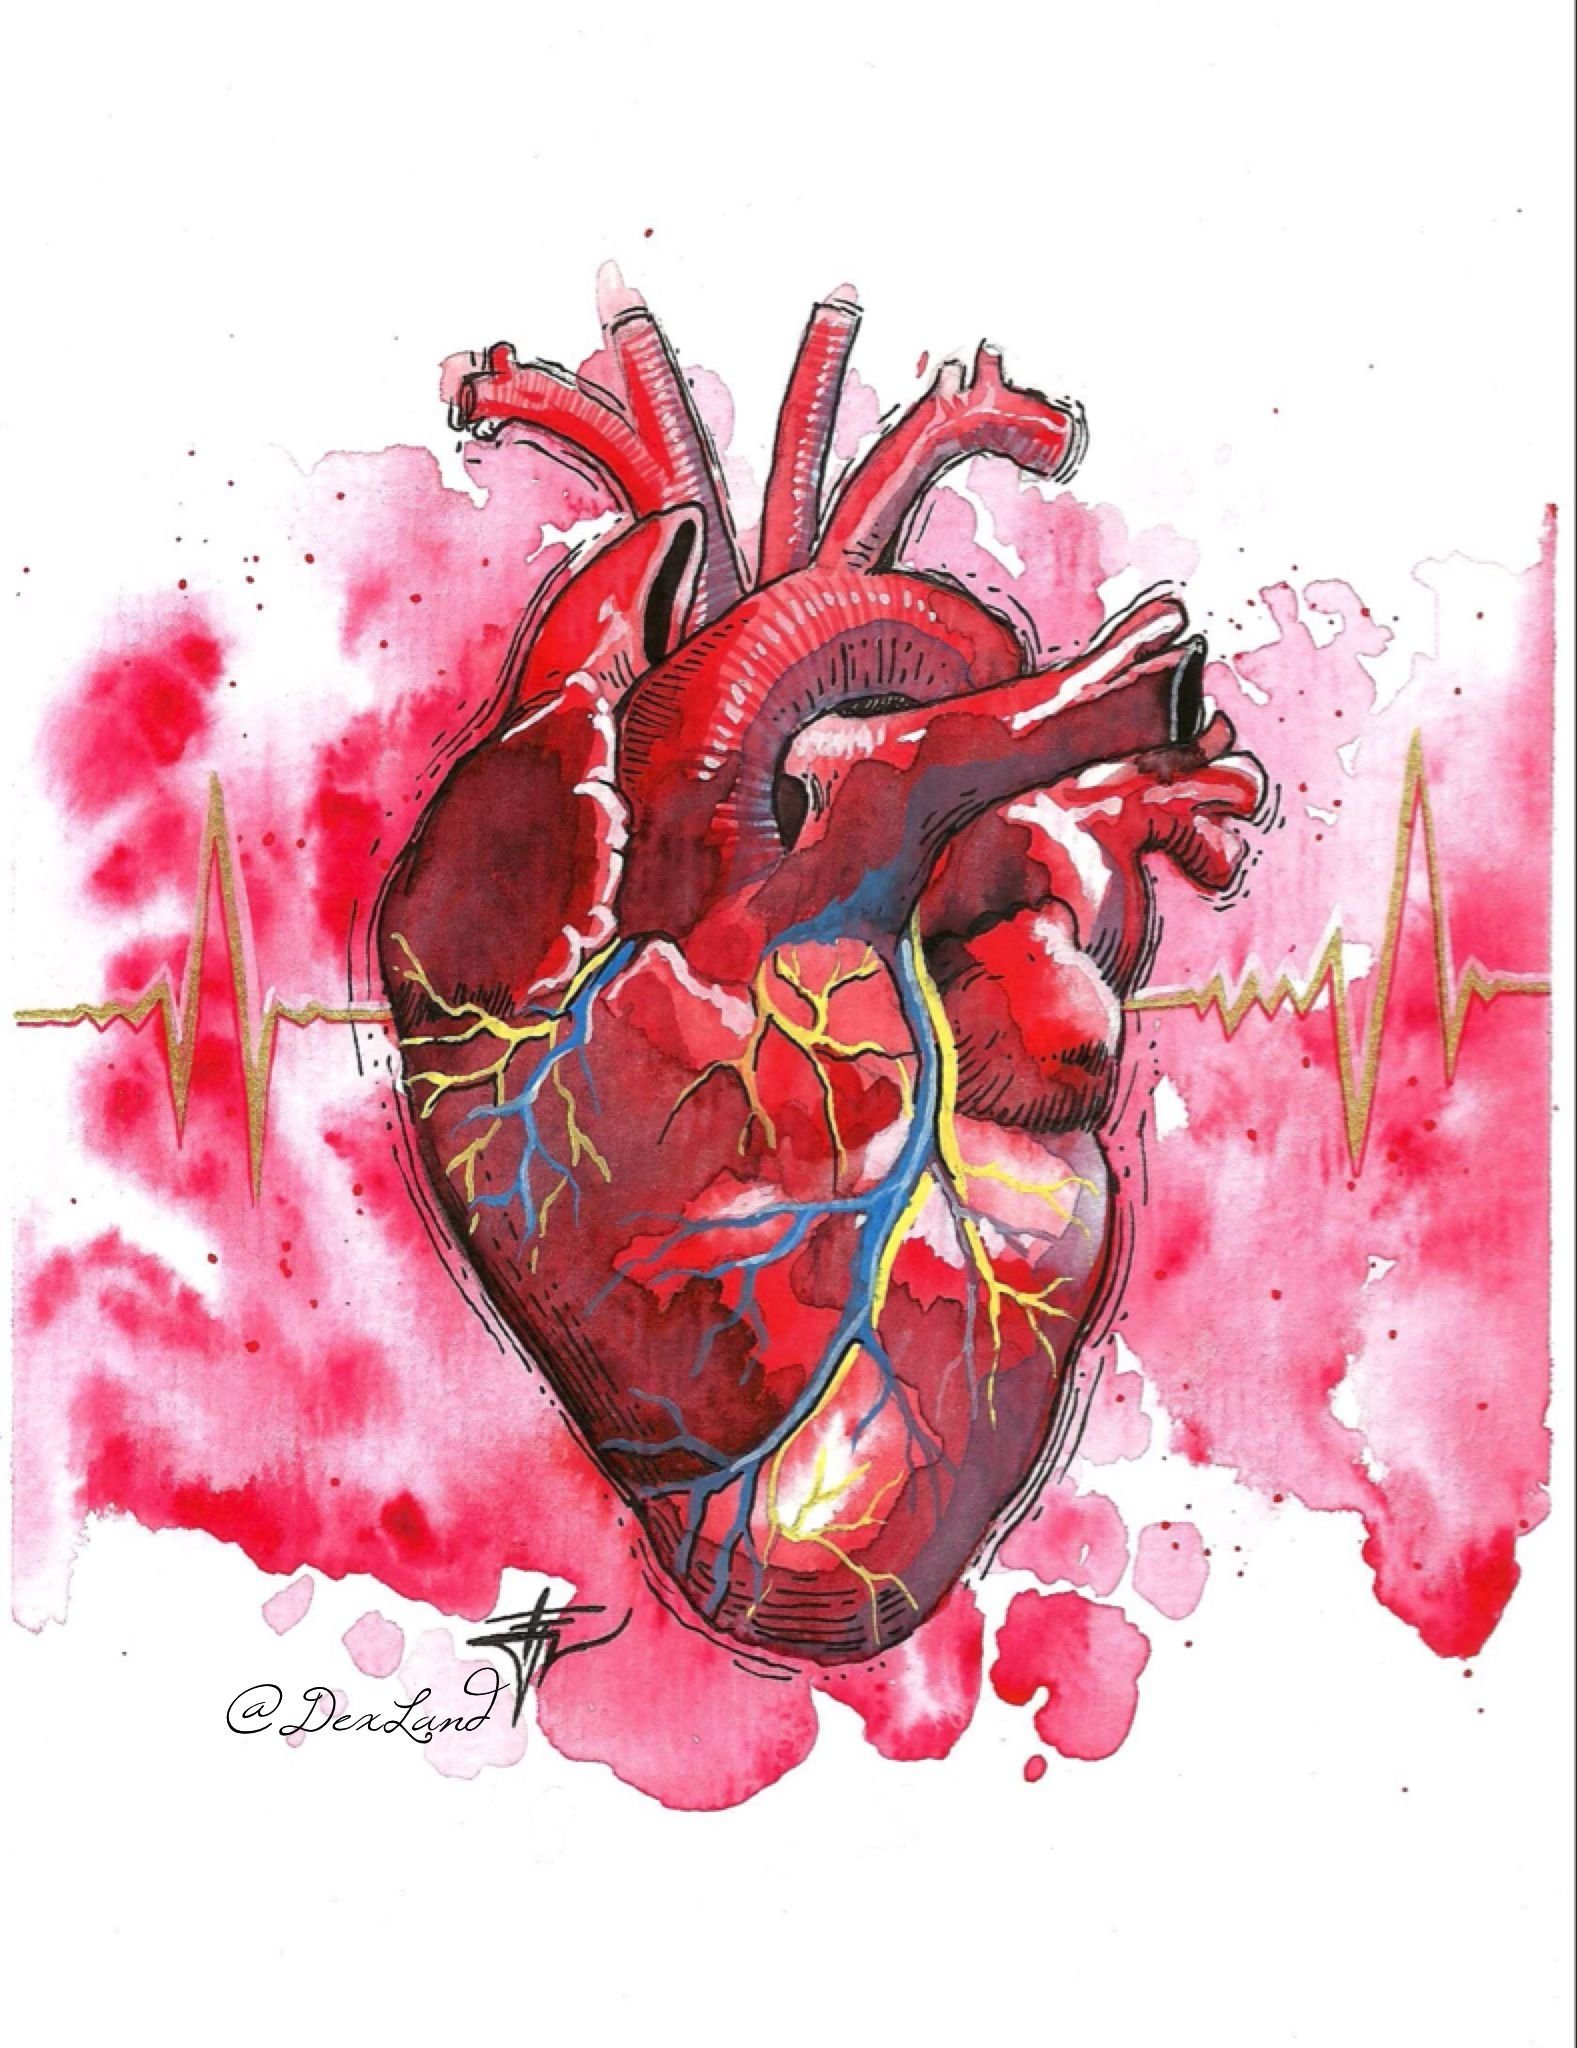 Орган сердце человека рисунок. Человеческое сердце анатомия.